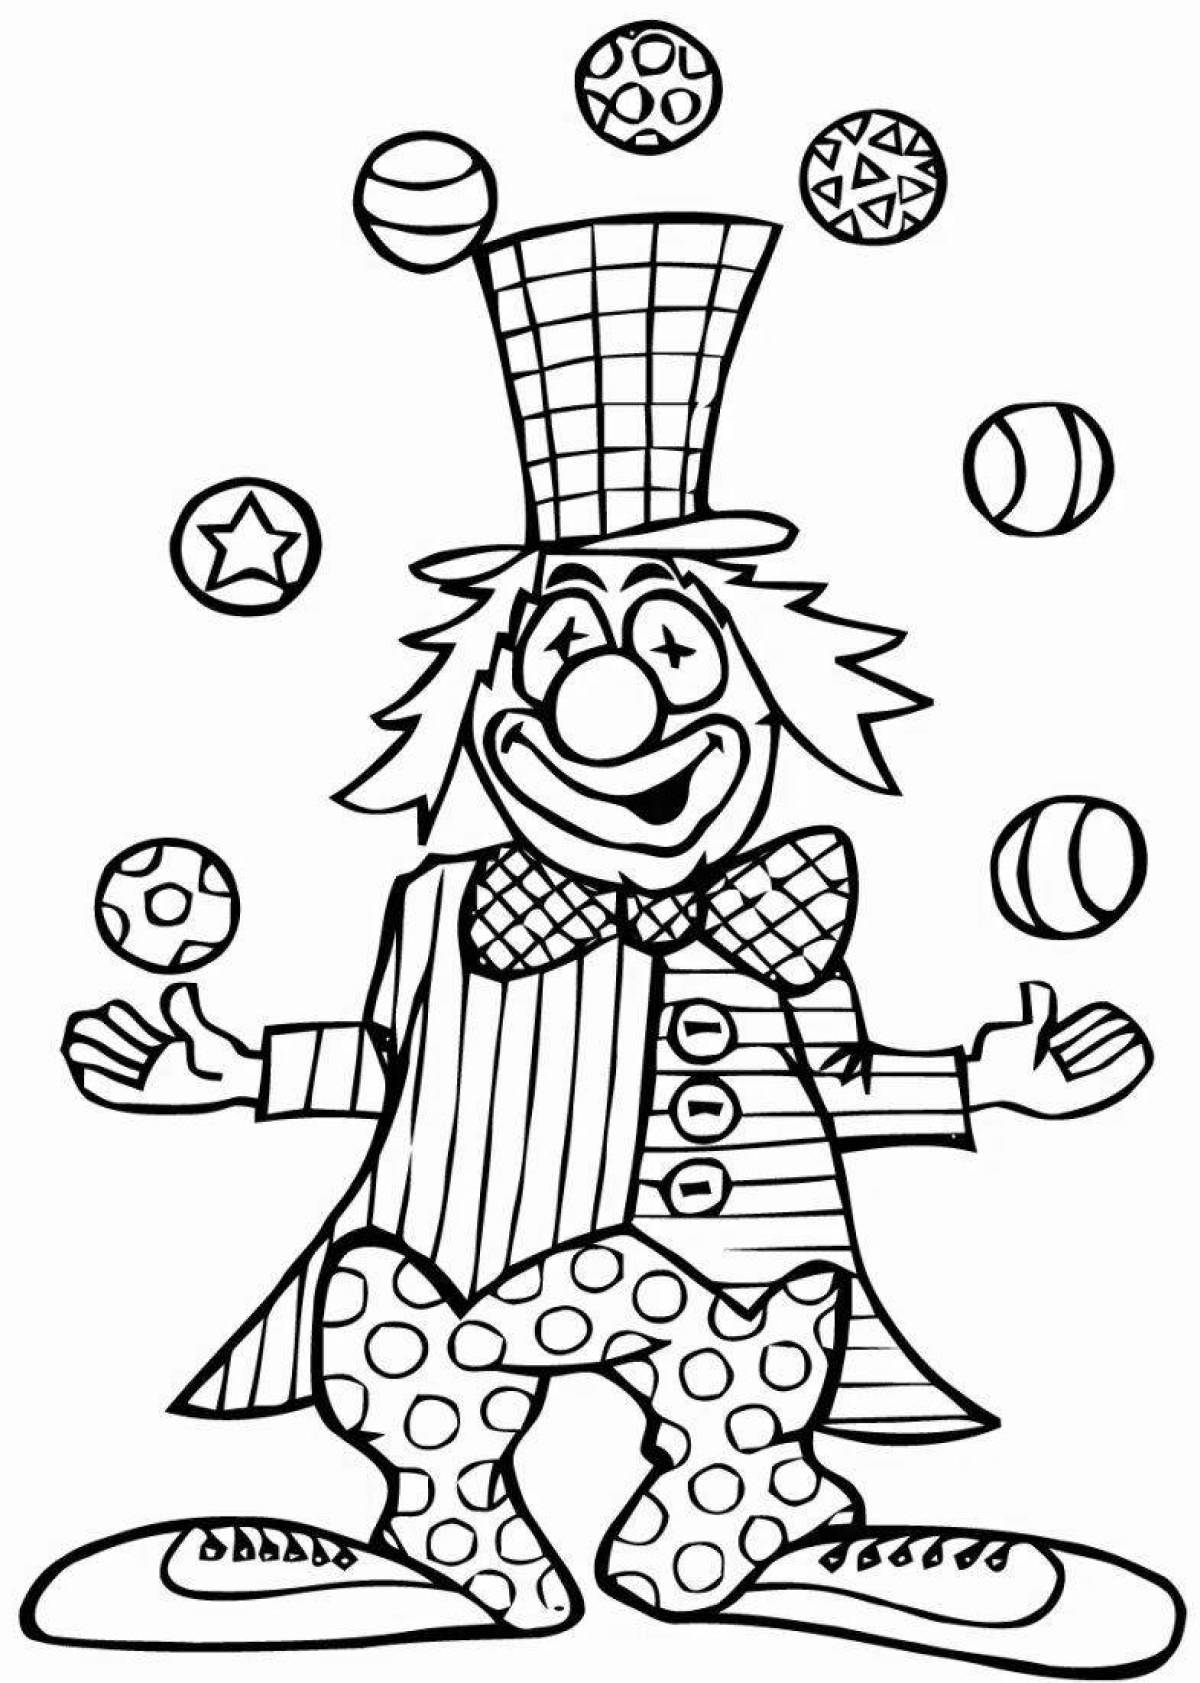 Раскраска клоун для детей 3 4 лет. Клоун жонглер раскраска. Клоун раскраска для детей. Веселый клоун раскраска. Раскраска весёлый клоун для детей.